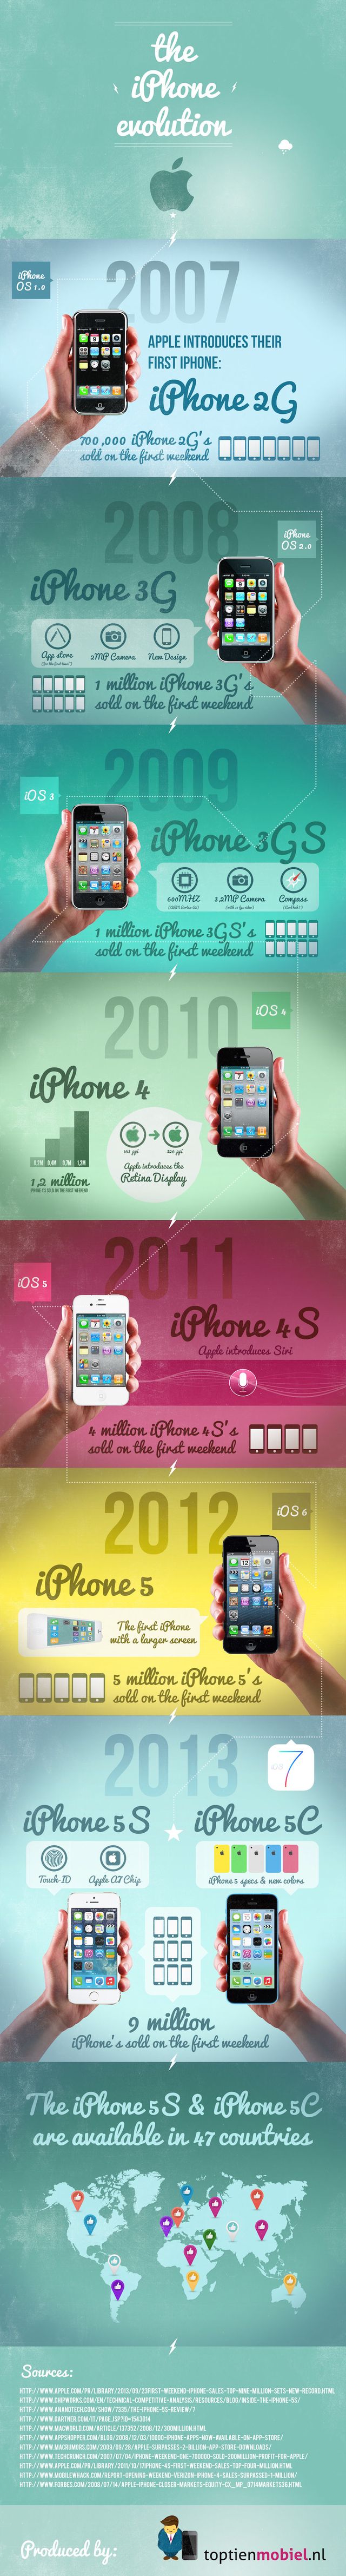 Descubre la evolución del iPhone con esta infografía